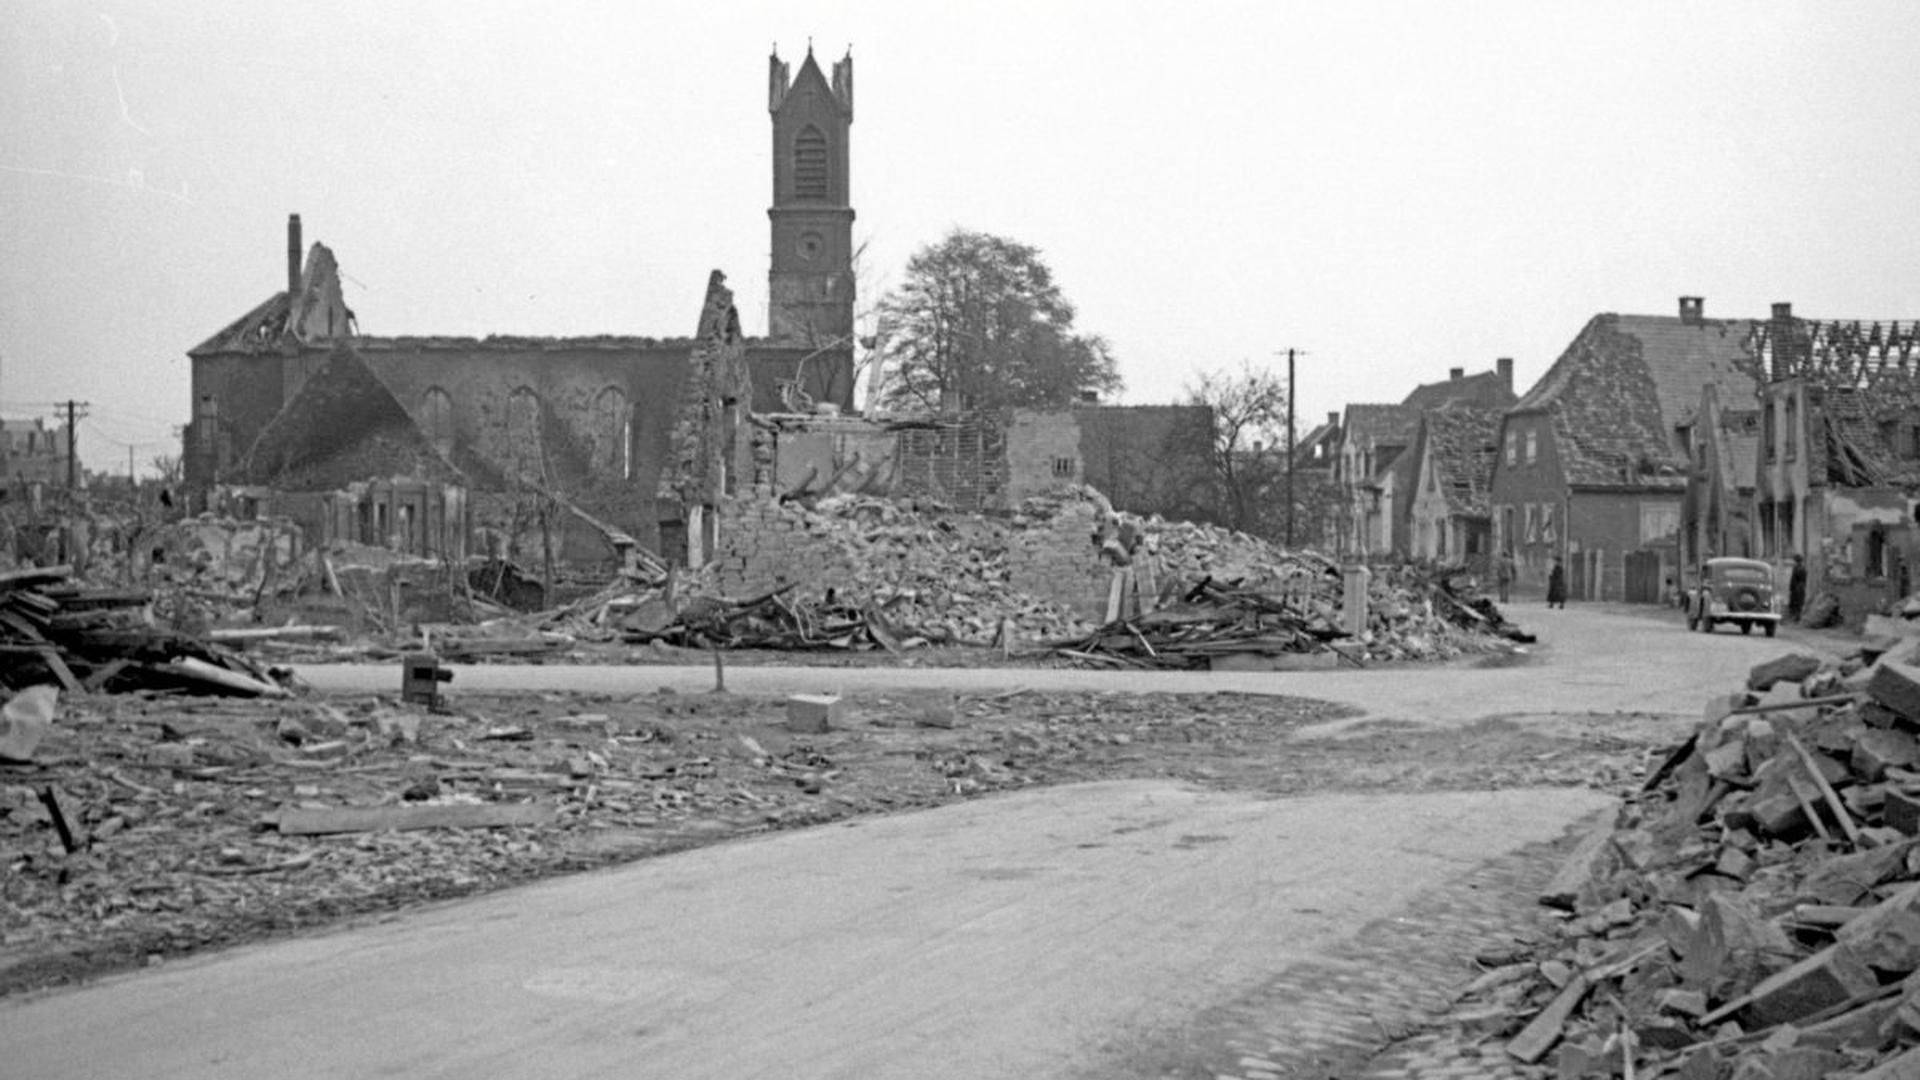 Das Ende des dörflichen Lebens: Die ausgebrannte Rintheimer Kirche ragt nach dem Luftangriff Ende April 1944 über zerstörten Häusern und ruinierten landwirtschaftlichen Nutzflächen auf.